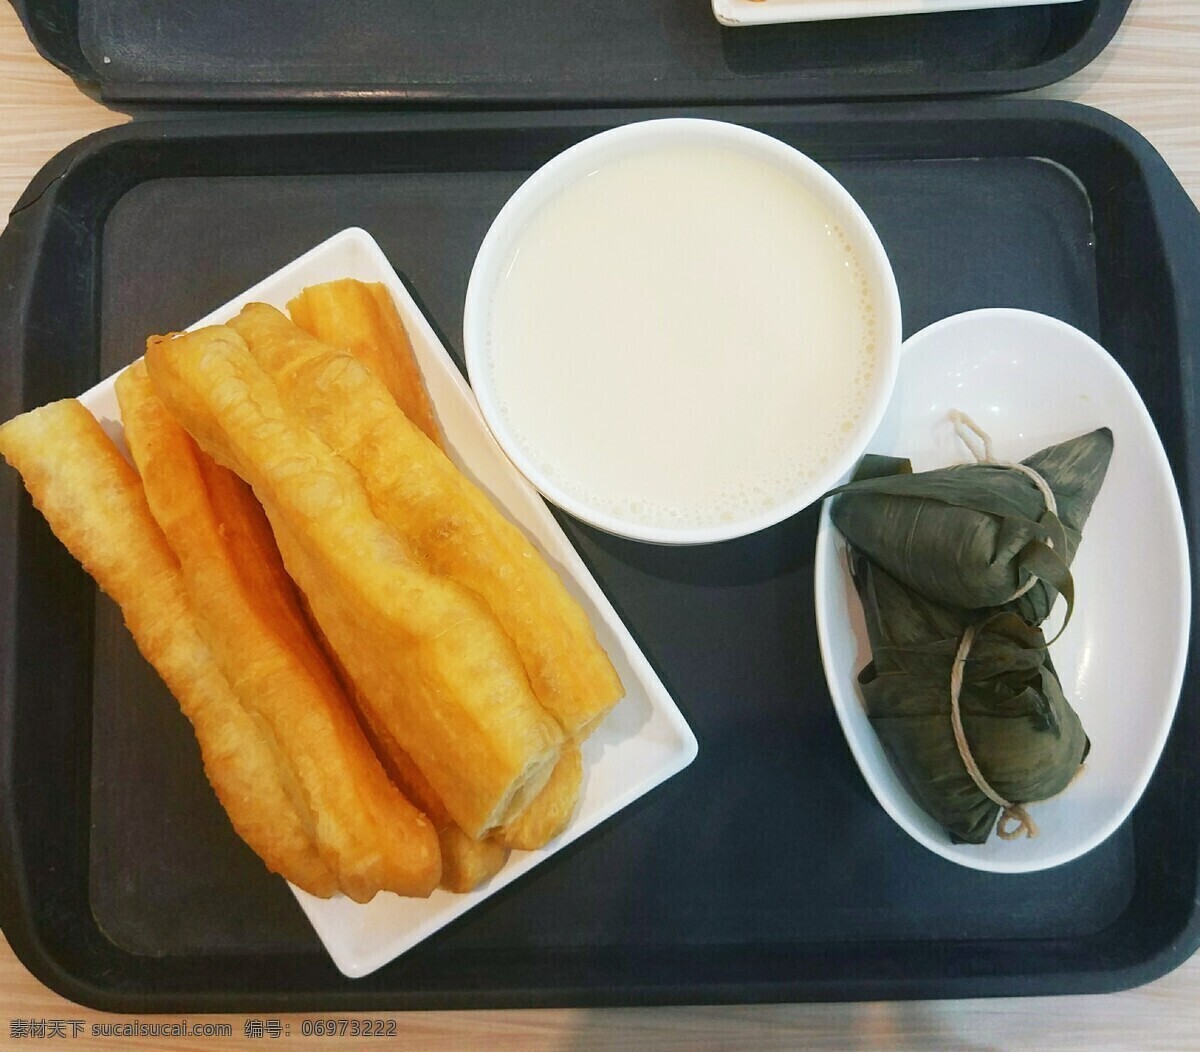 永和豆浆 豆浆 油条 粽子 早餐 早点 温馨 早饭 早餐店 店铺 餐饮美食 传统美食